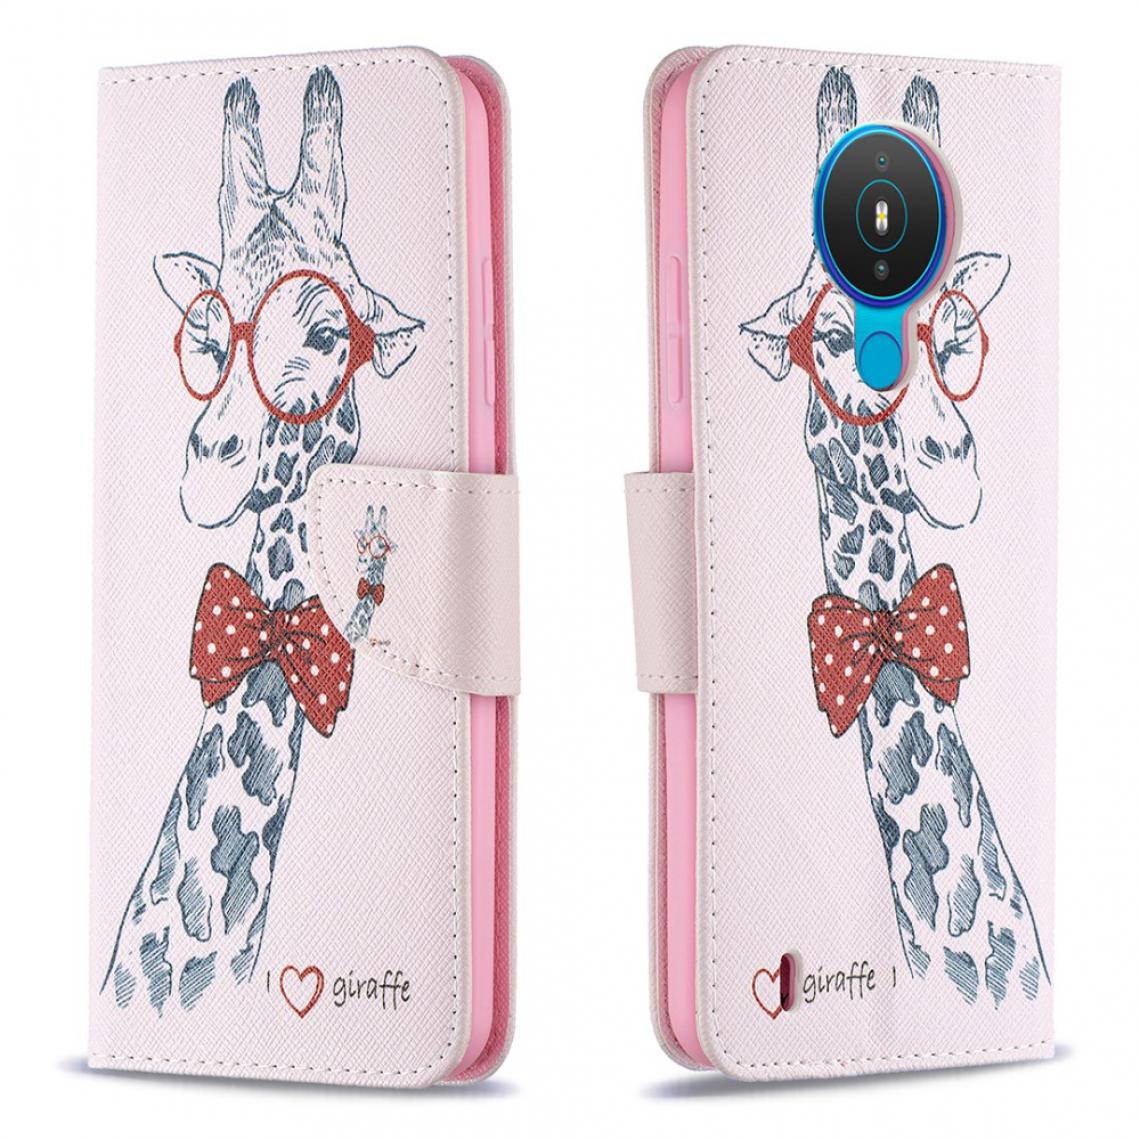 Other - Etui en PU Impression de motifs adorable girafe portant des lunettes pour votre Nokia 1.4 - Coque, étui smartphone